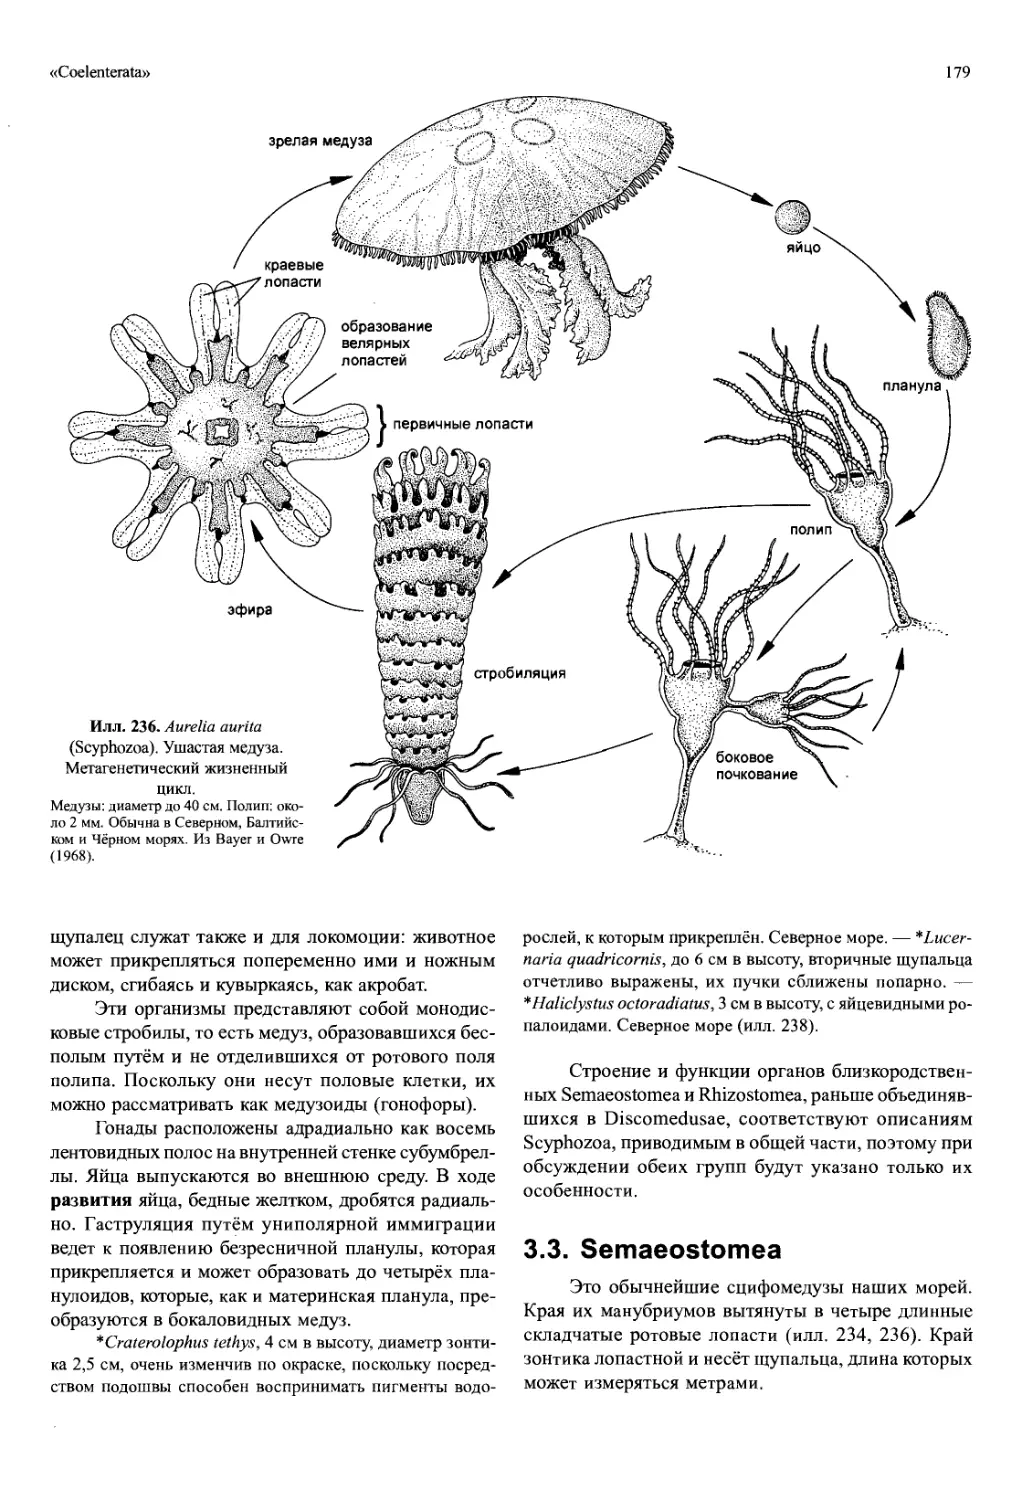 Жизненный цикл медузы Аурелии